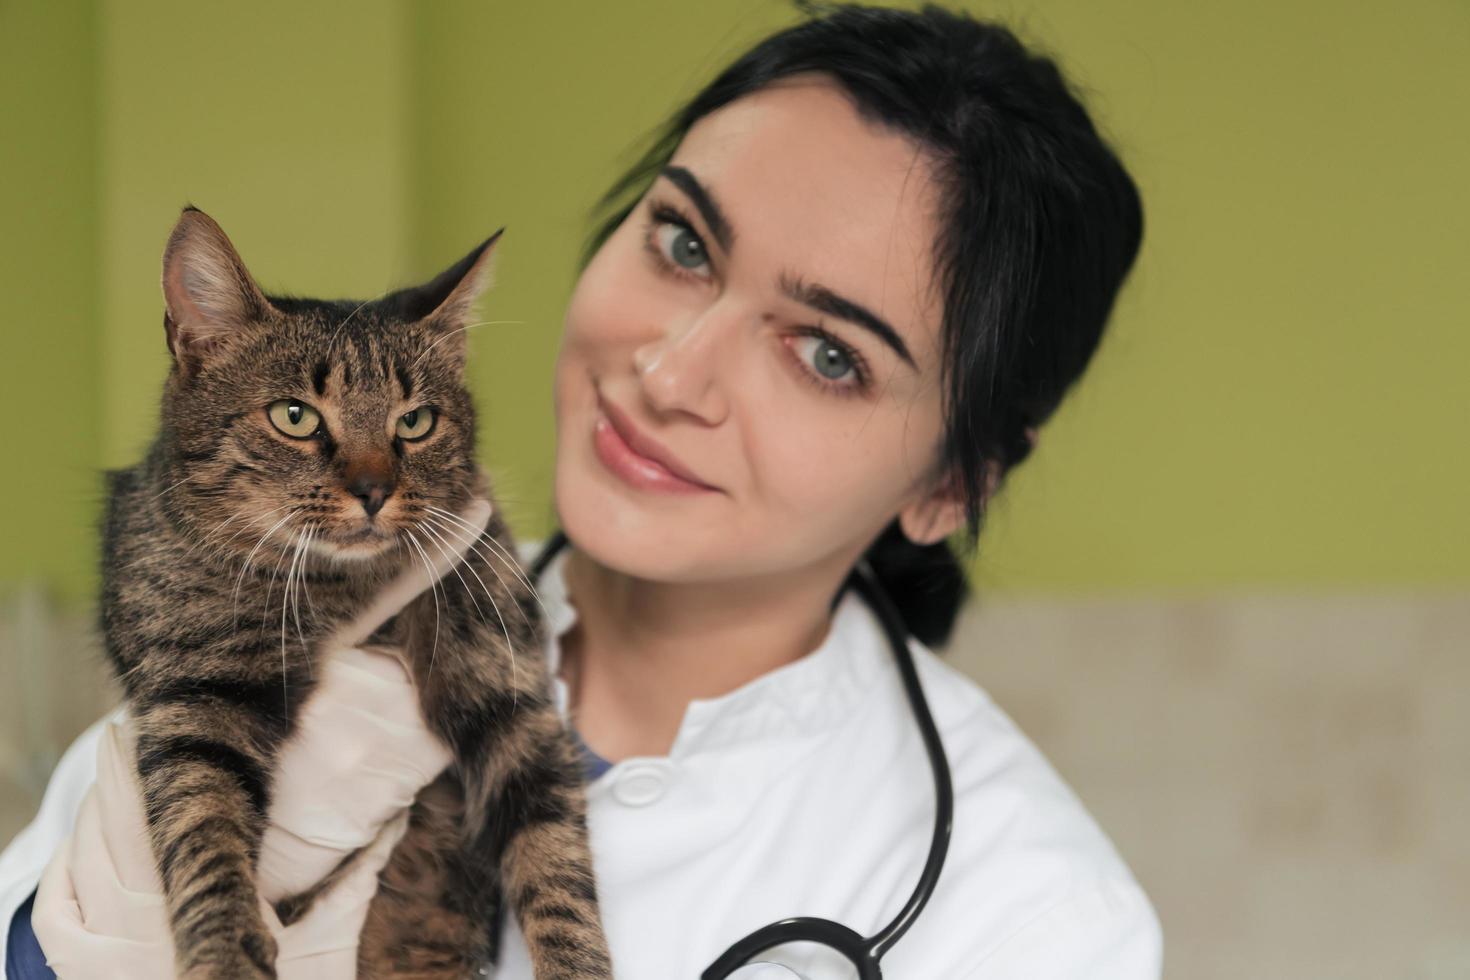 clínica veterinaria. retrato de una doctora en el hospital de animales sosteniendo un lindo gato enfermo foto